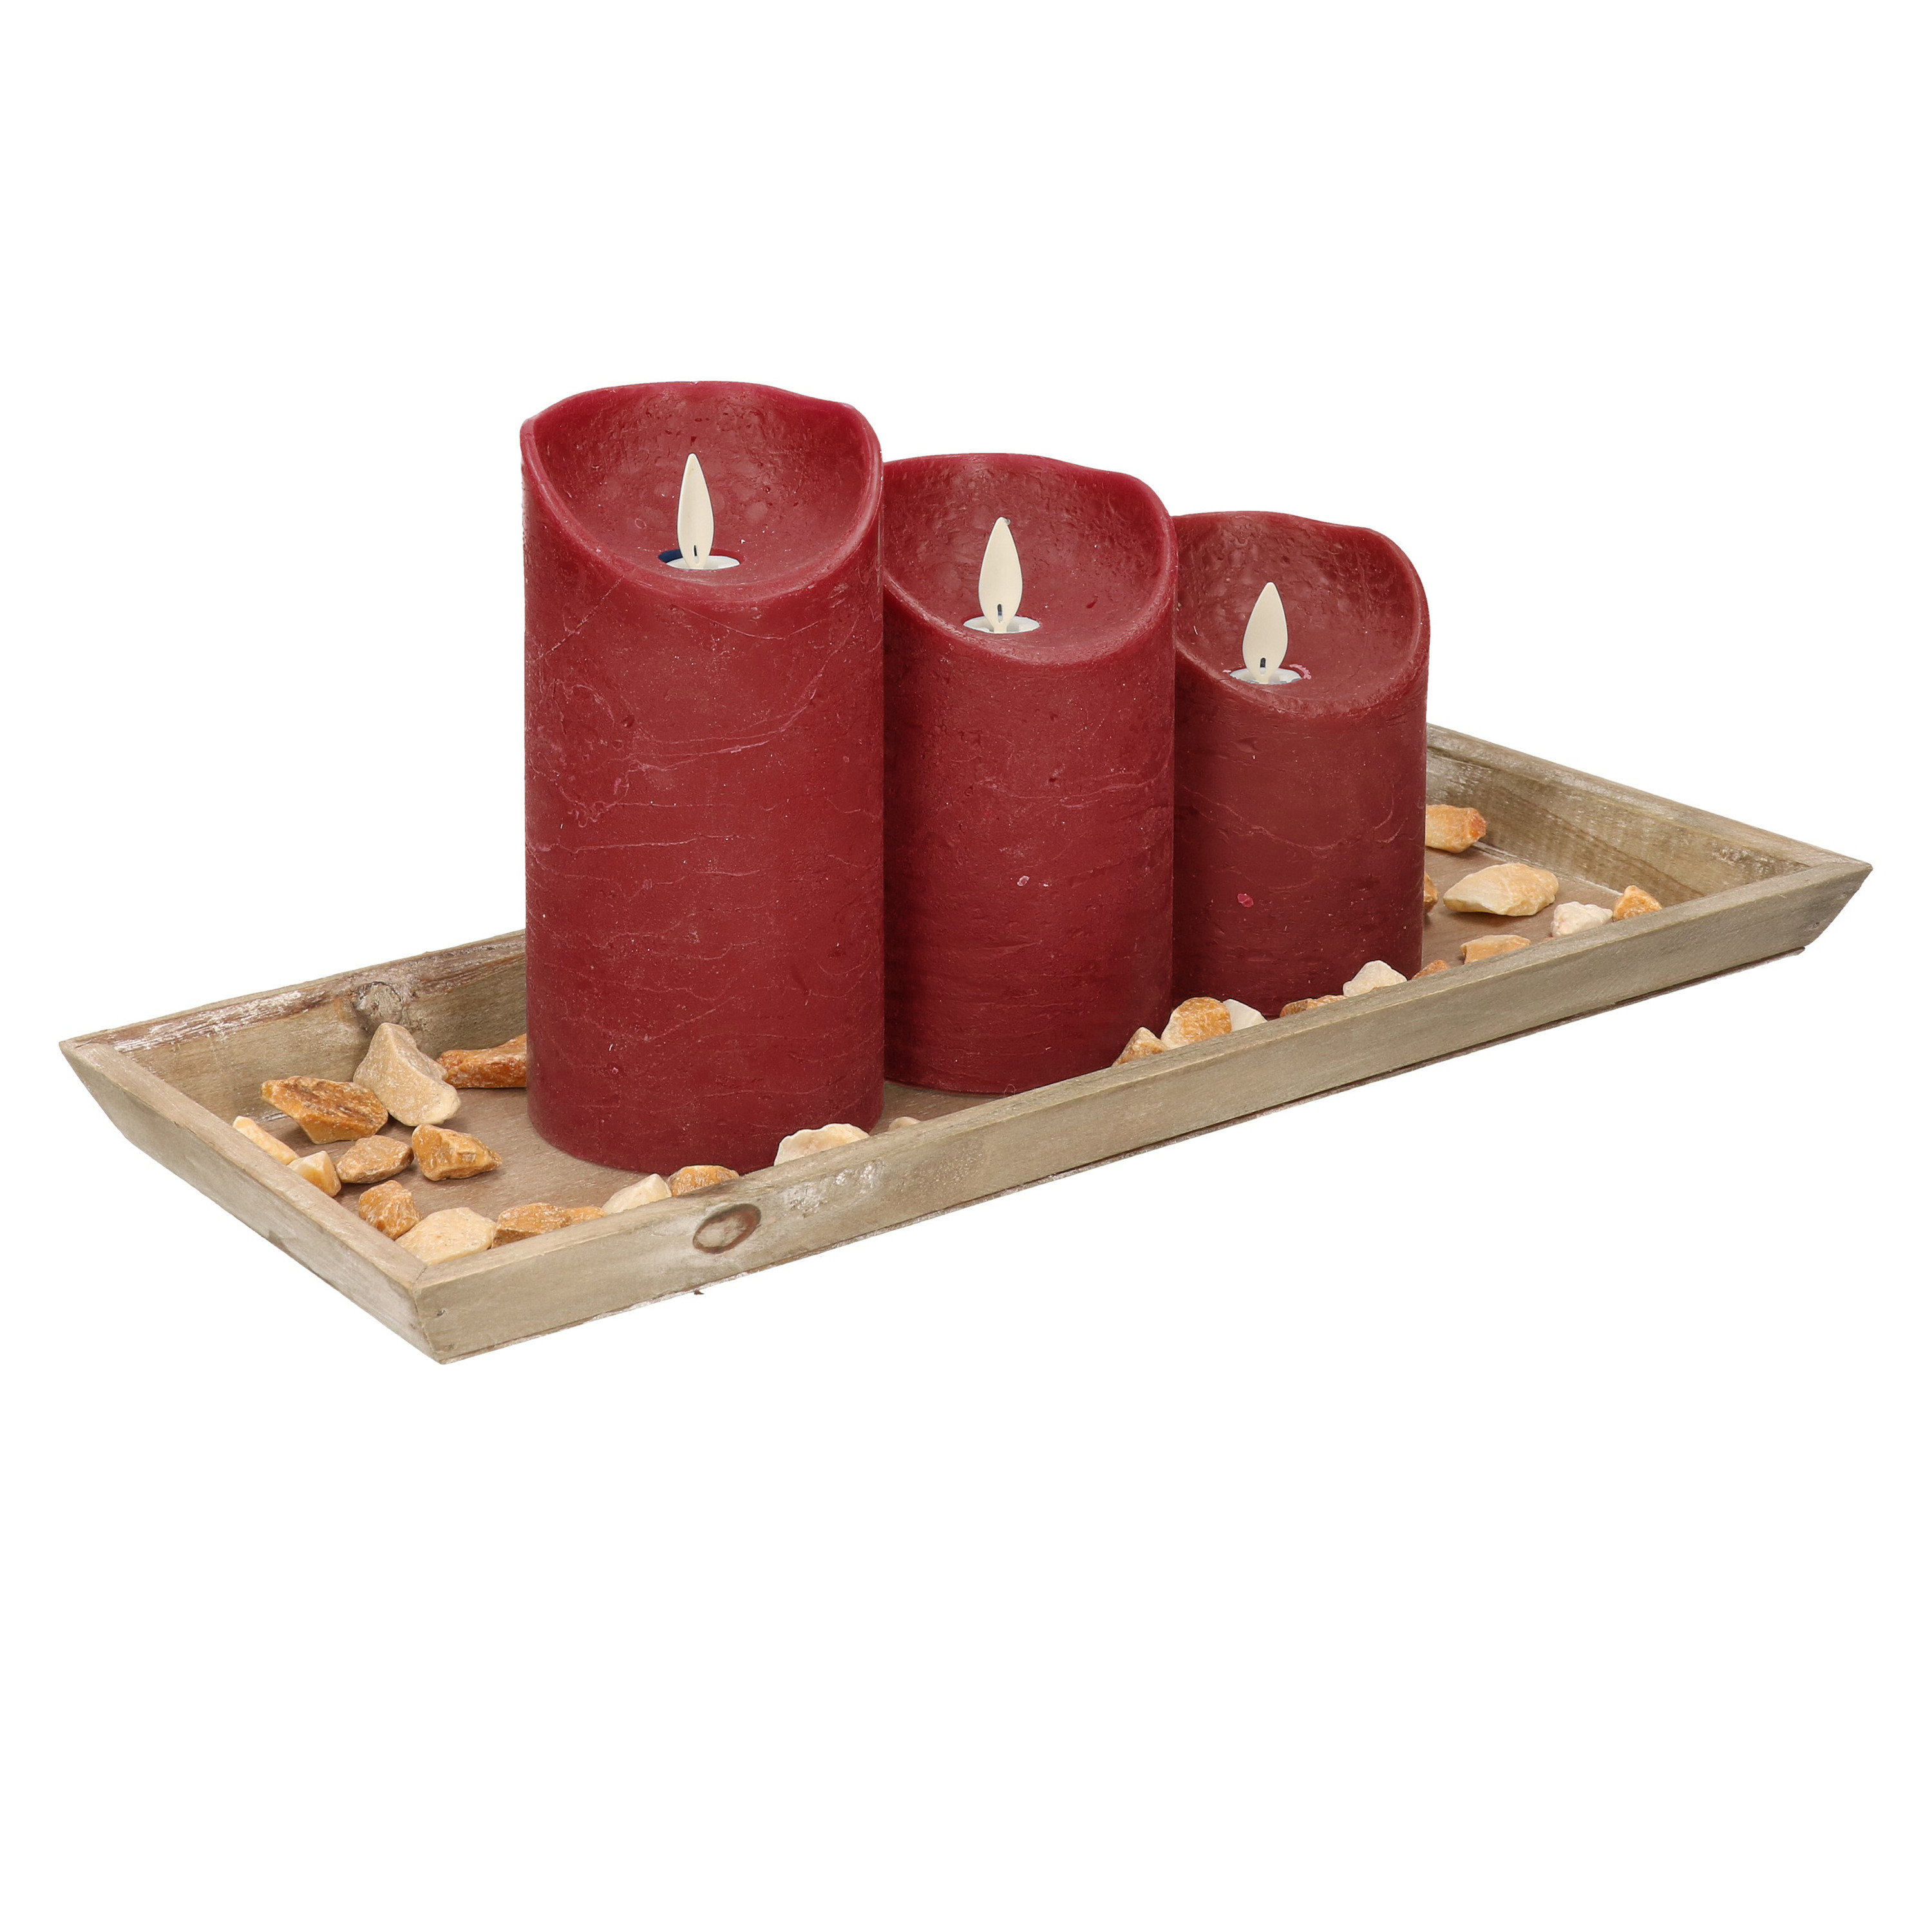 Houten dienblad met steentjes en 3 LED kaarsen in het bordeaux rood 39 x 15 cm